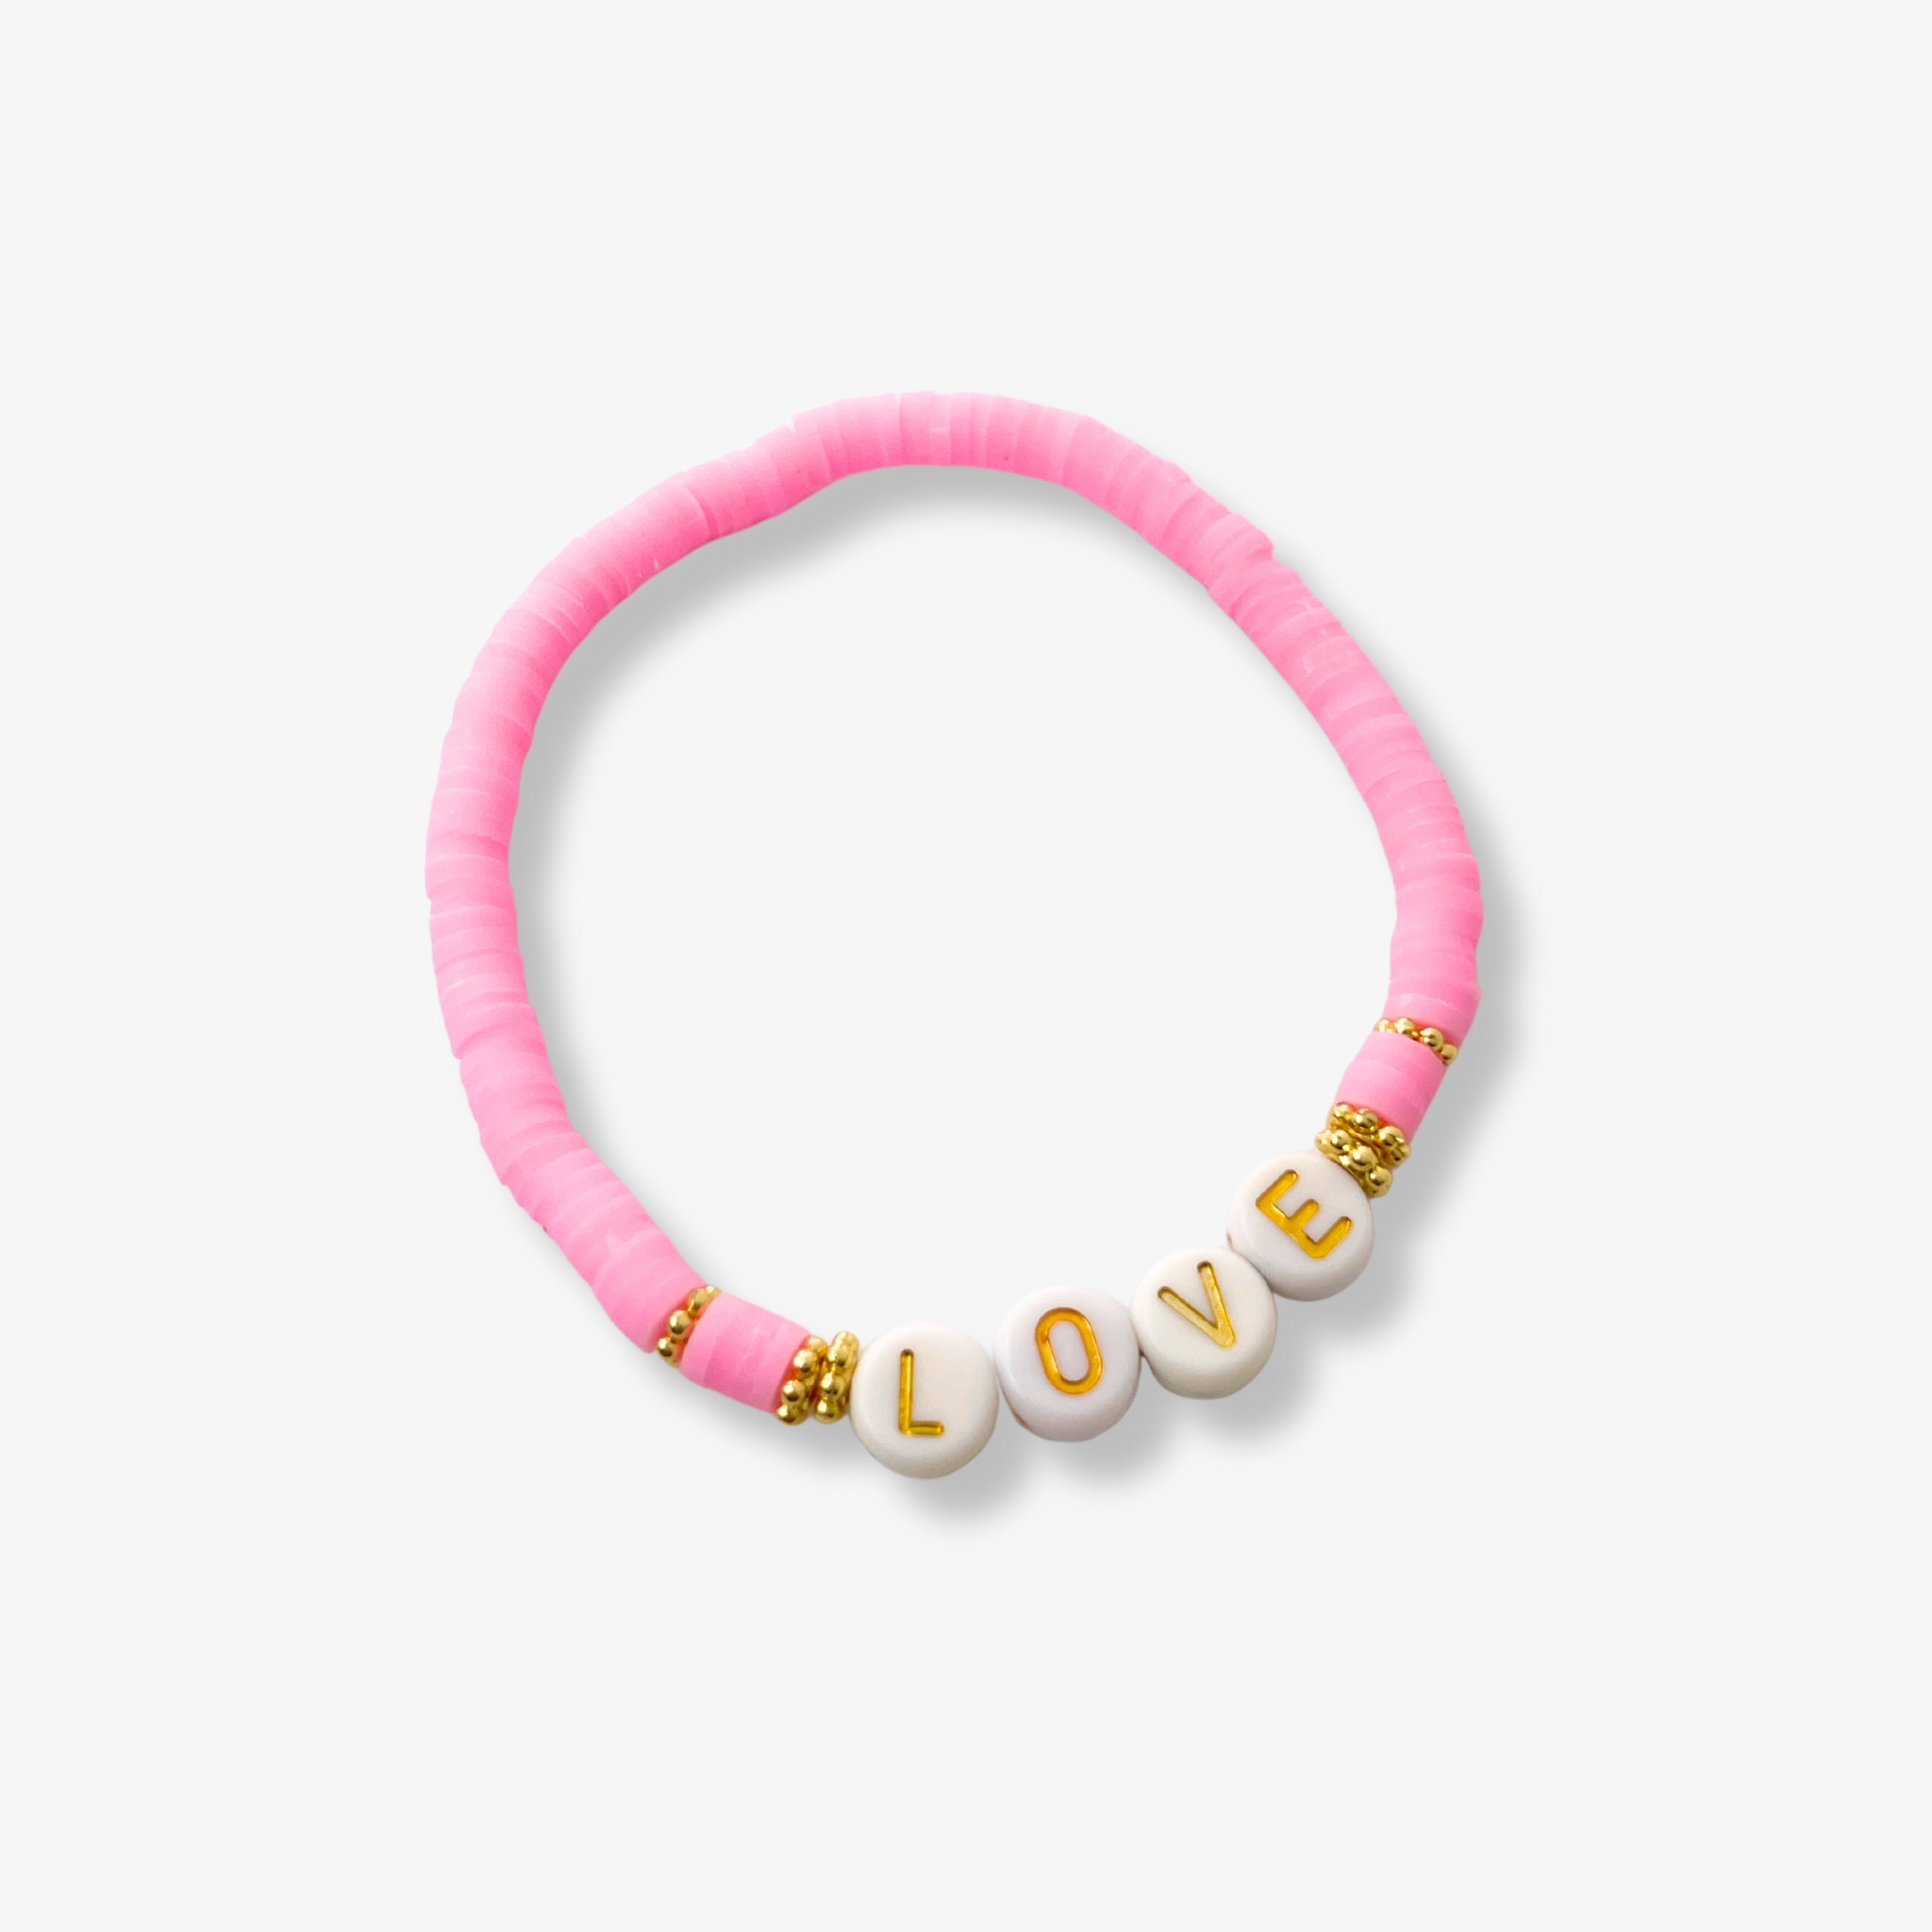 Polly Love Bracelet